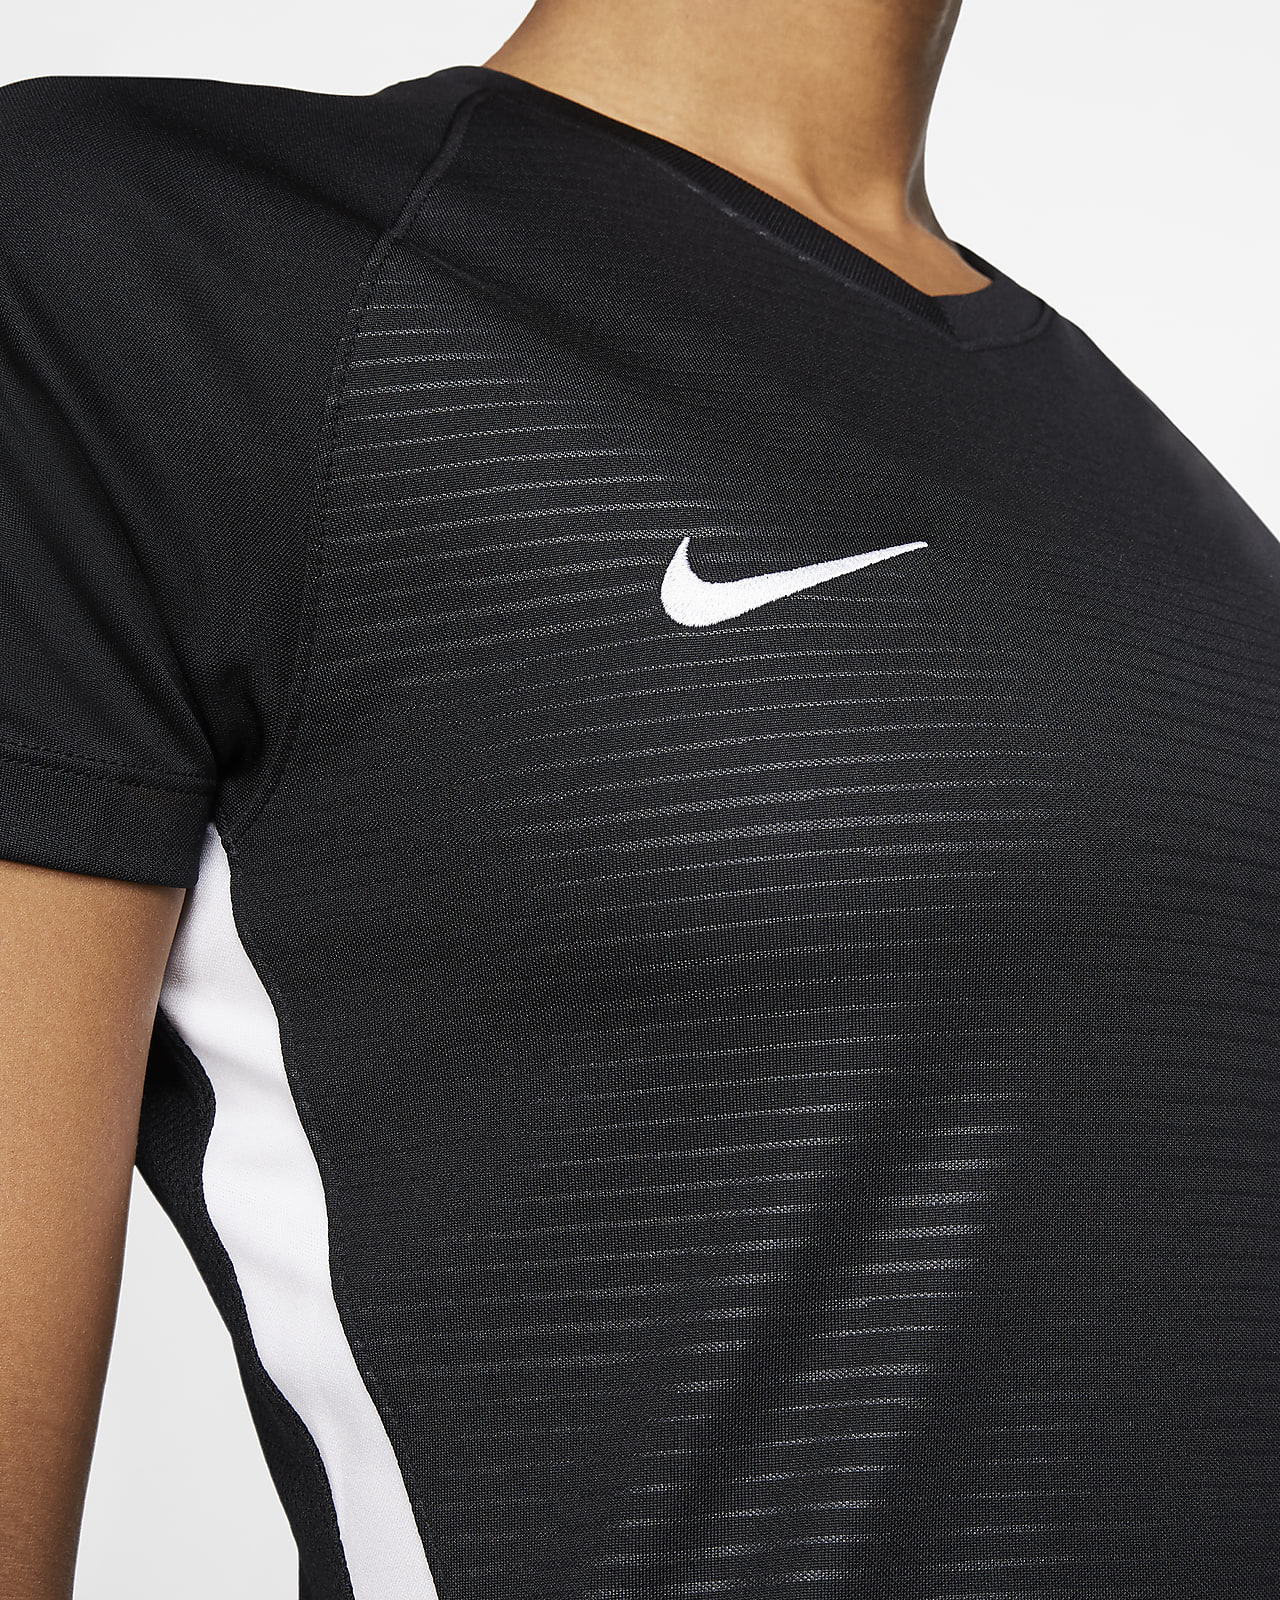 Nike Women's Tiempo Premier SS Soccer Jersey - Black, M